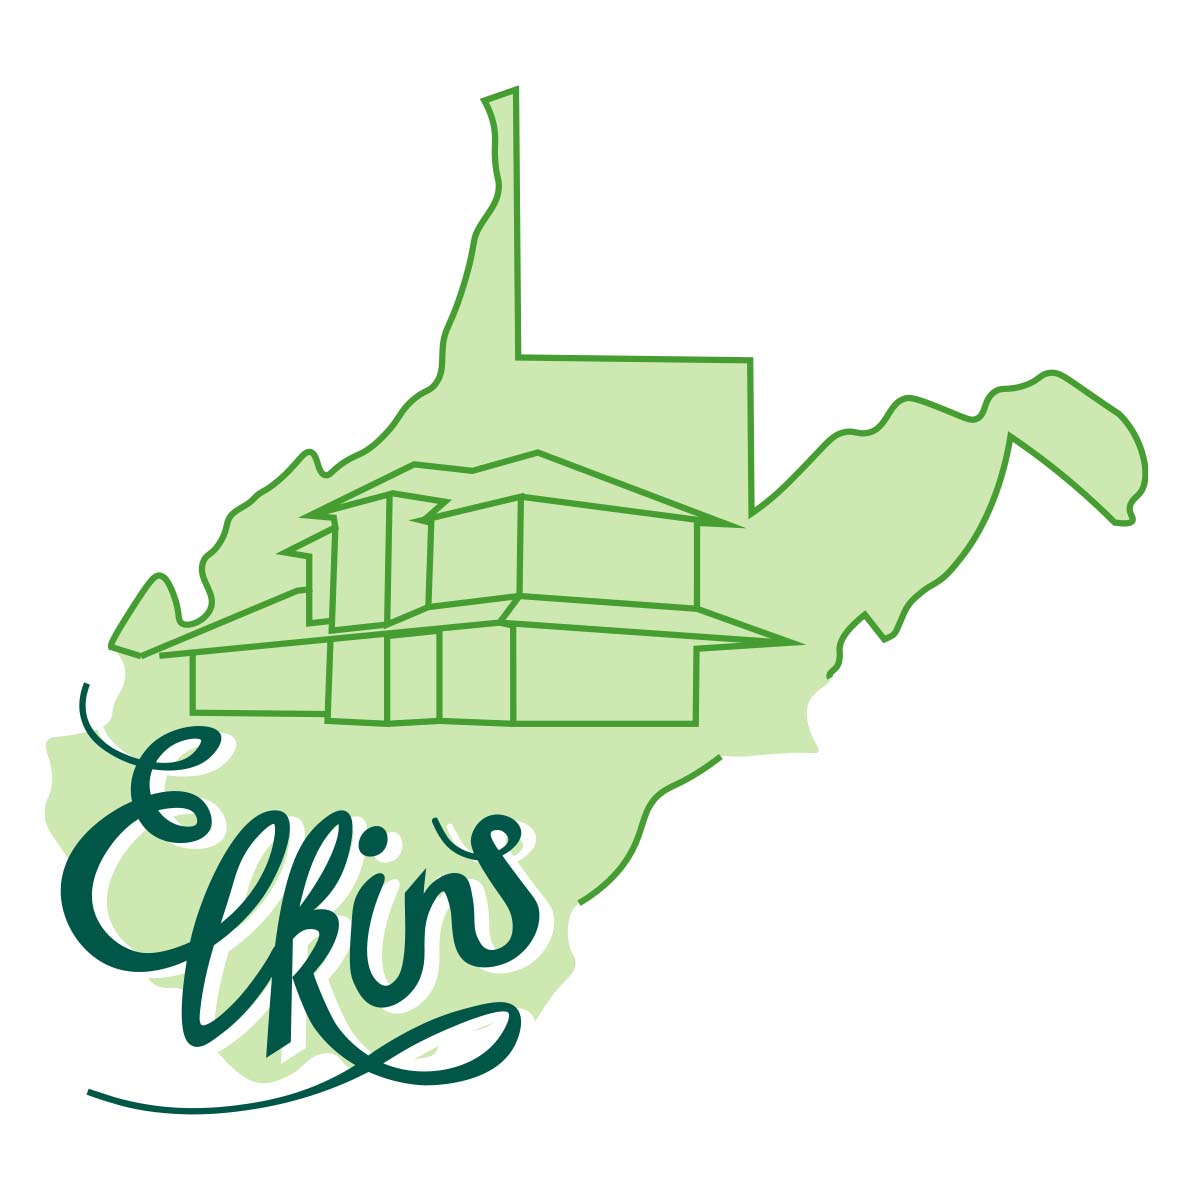 Elkins depot and welcome center logo variation